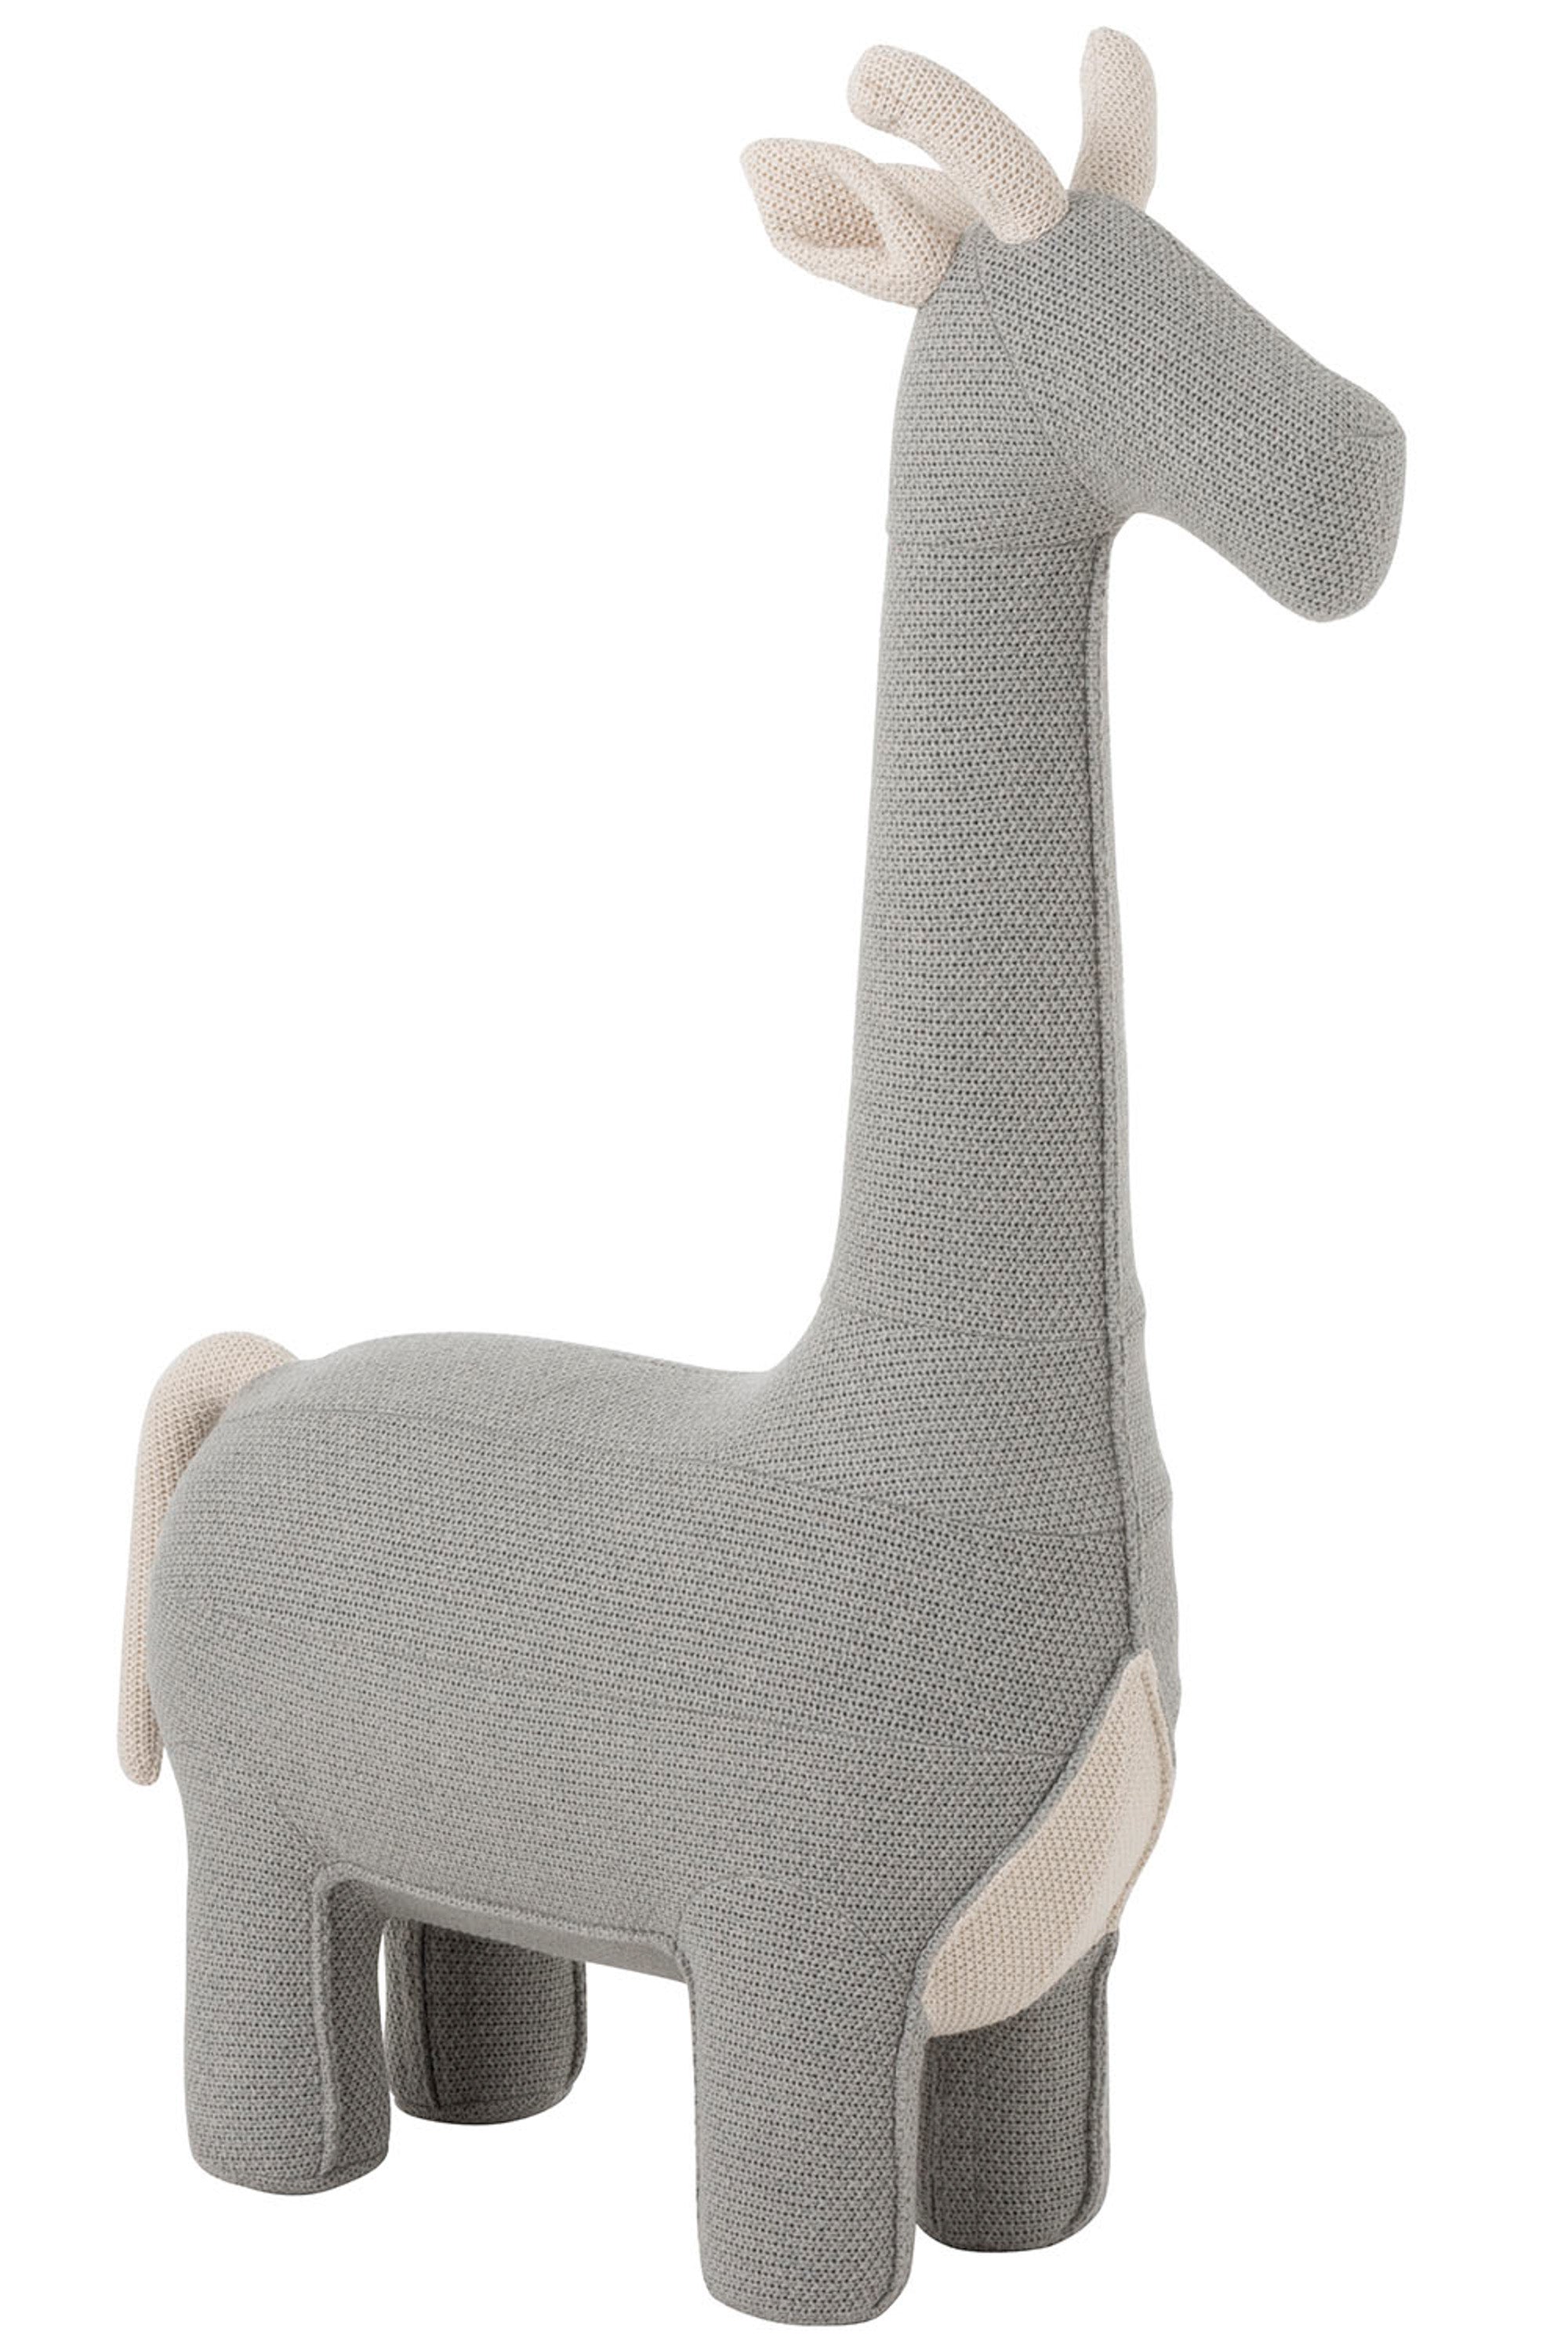 Großes Stofftier-Giraffe (128 cm) mit grauem Baumwollbezug,  schlichtes Design, als Deko Objekt, Sitzgelegenheit oder Reitier für Kinder.